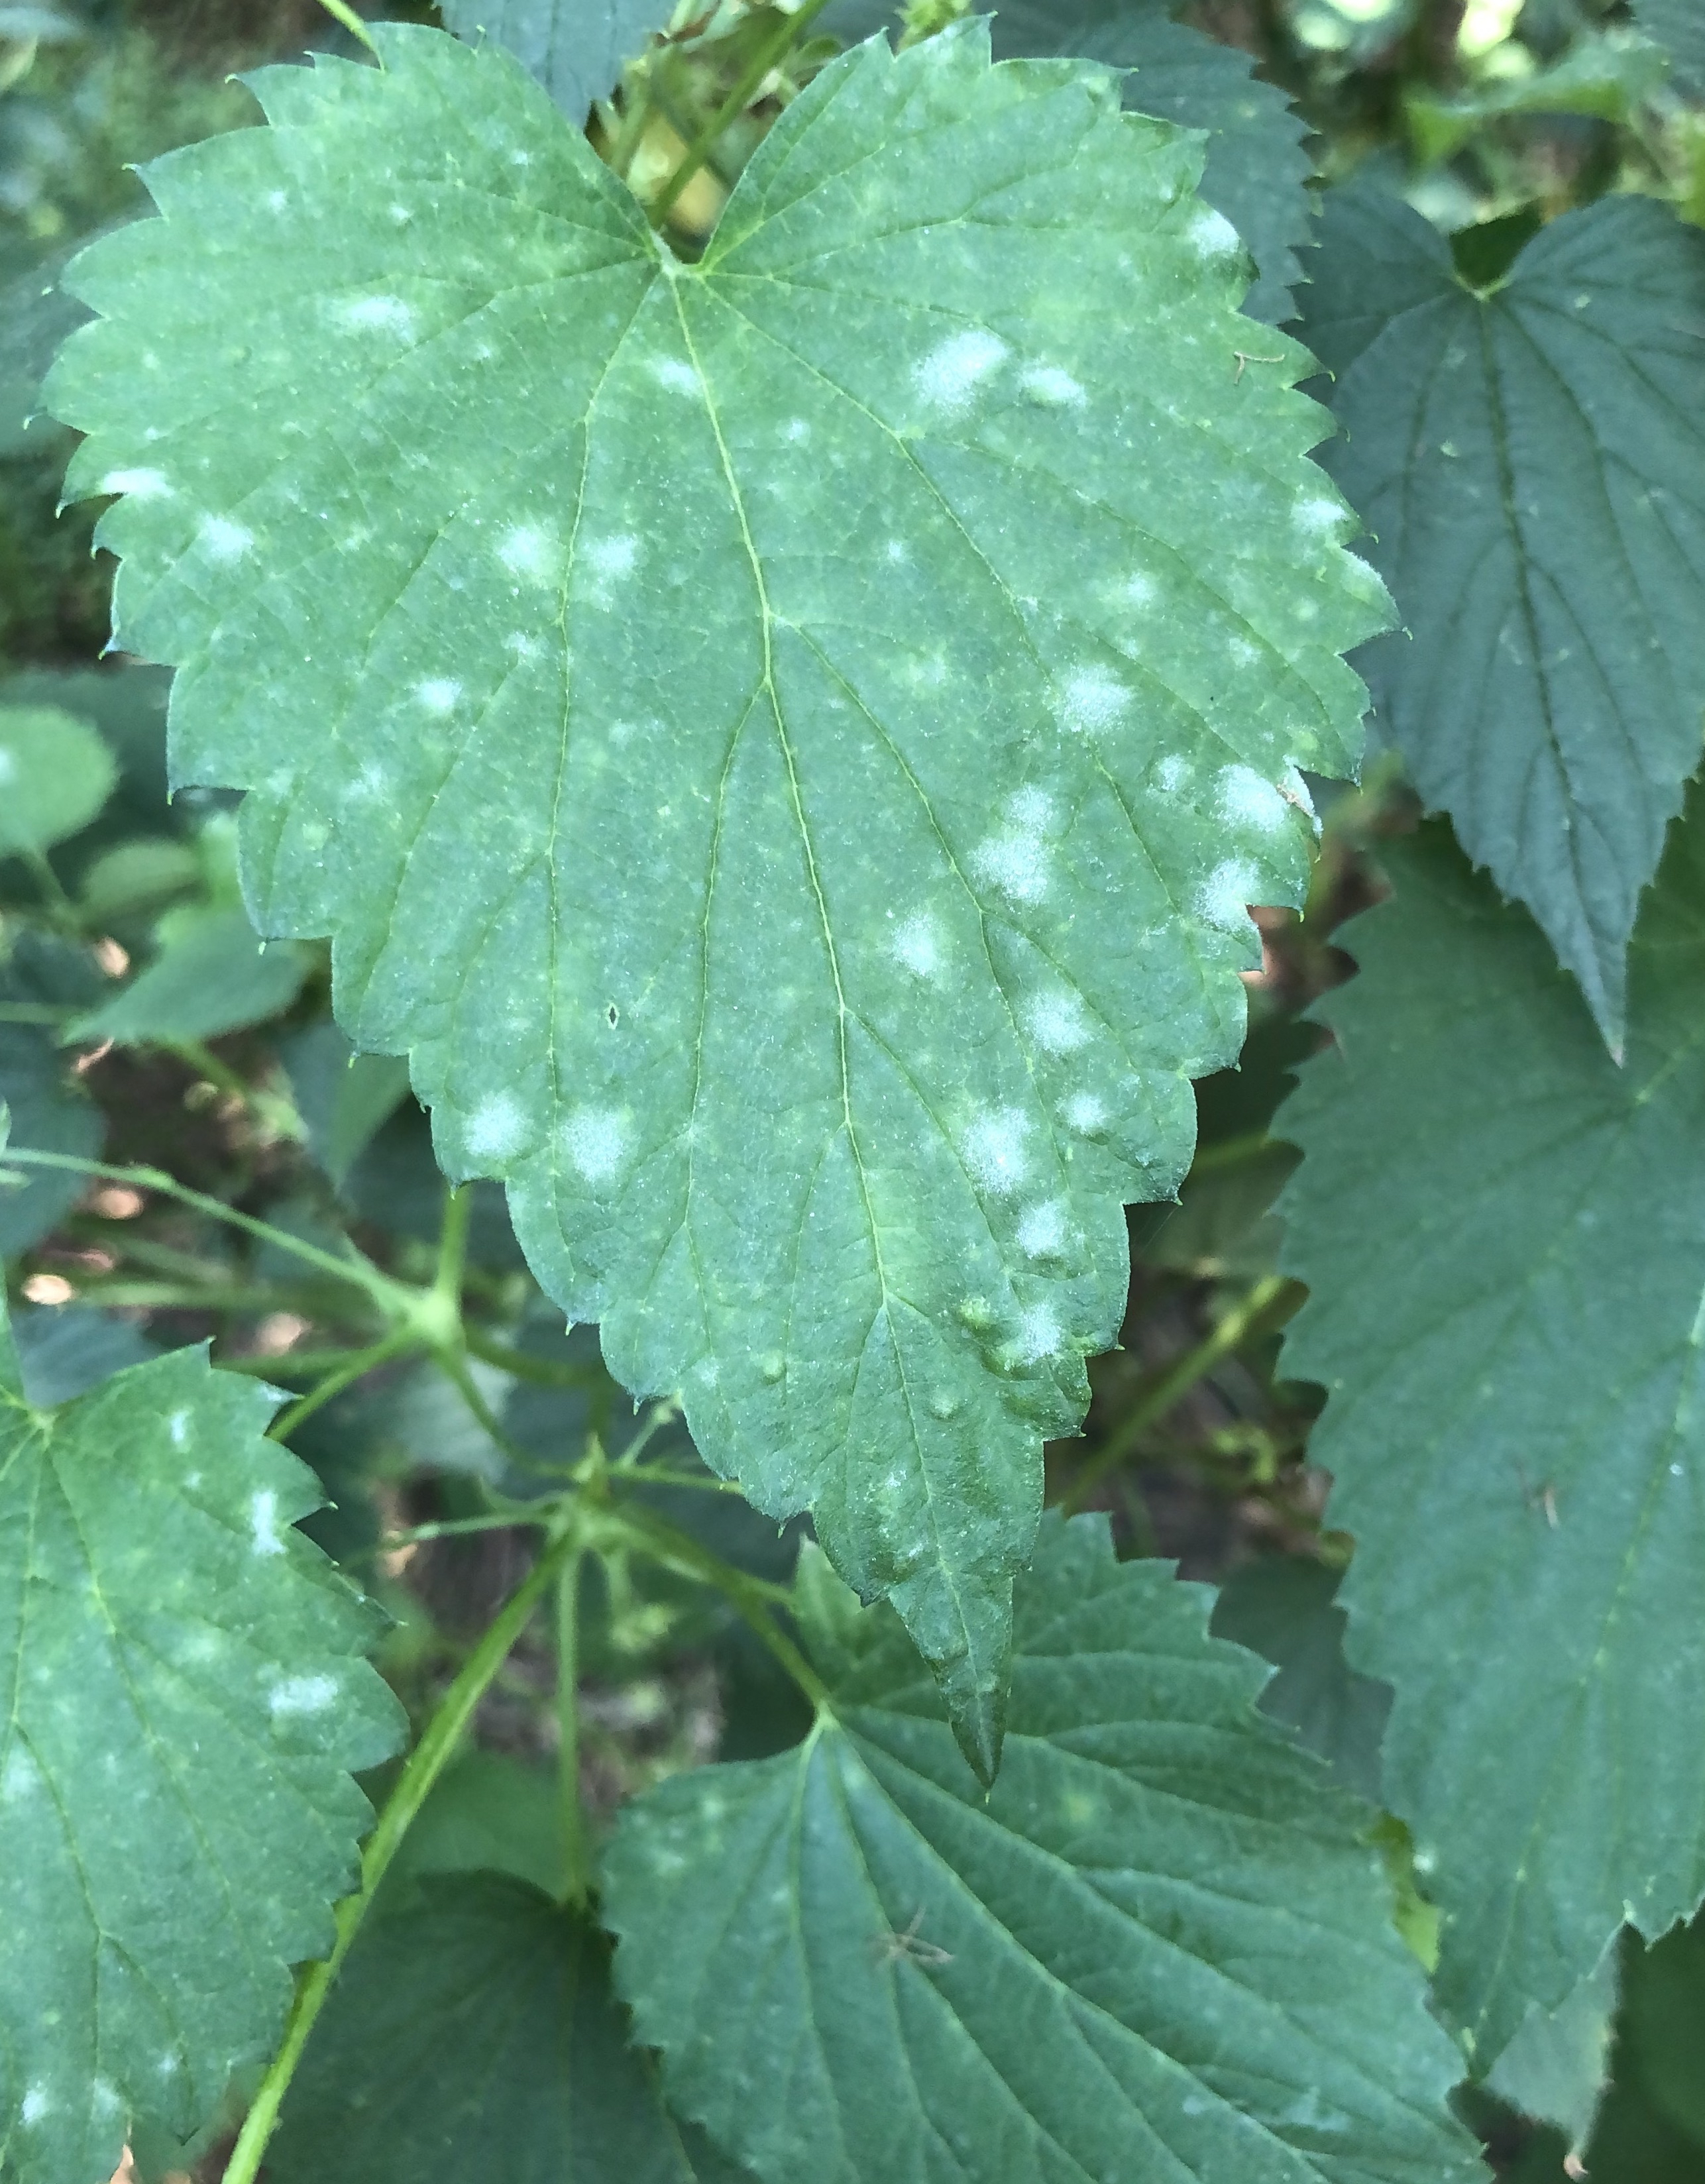 Foliar symptoms of powdery mildew